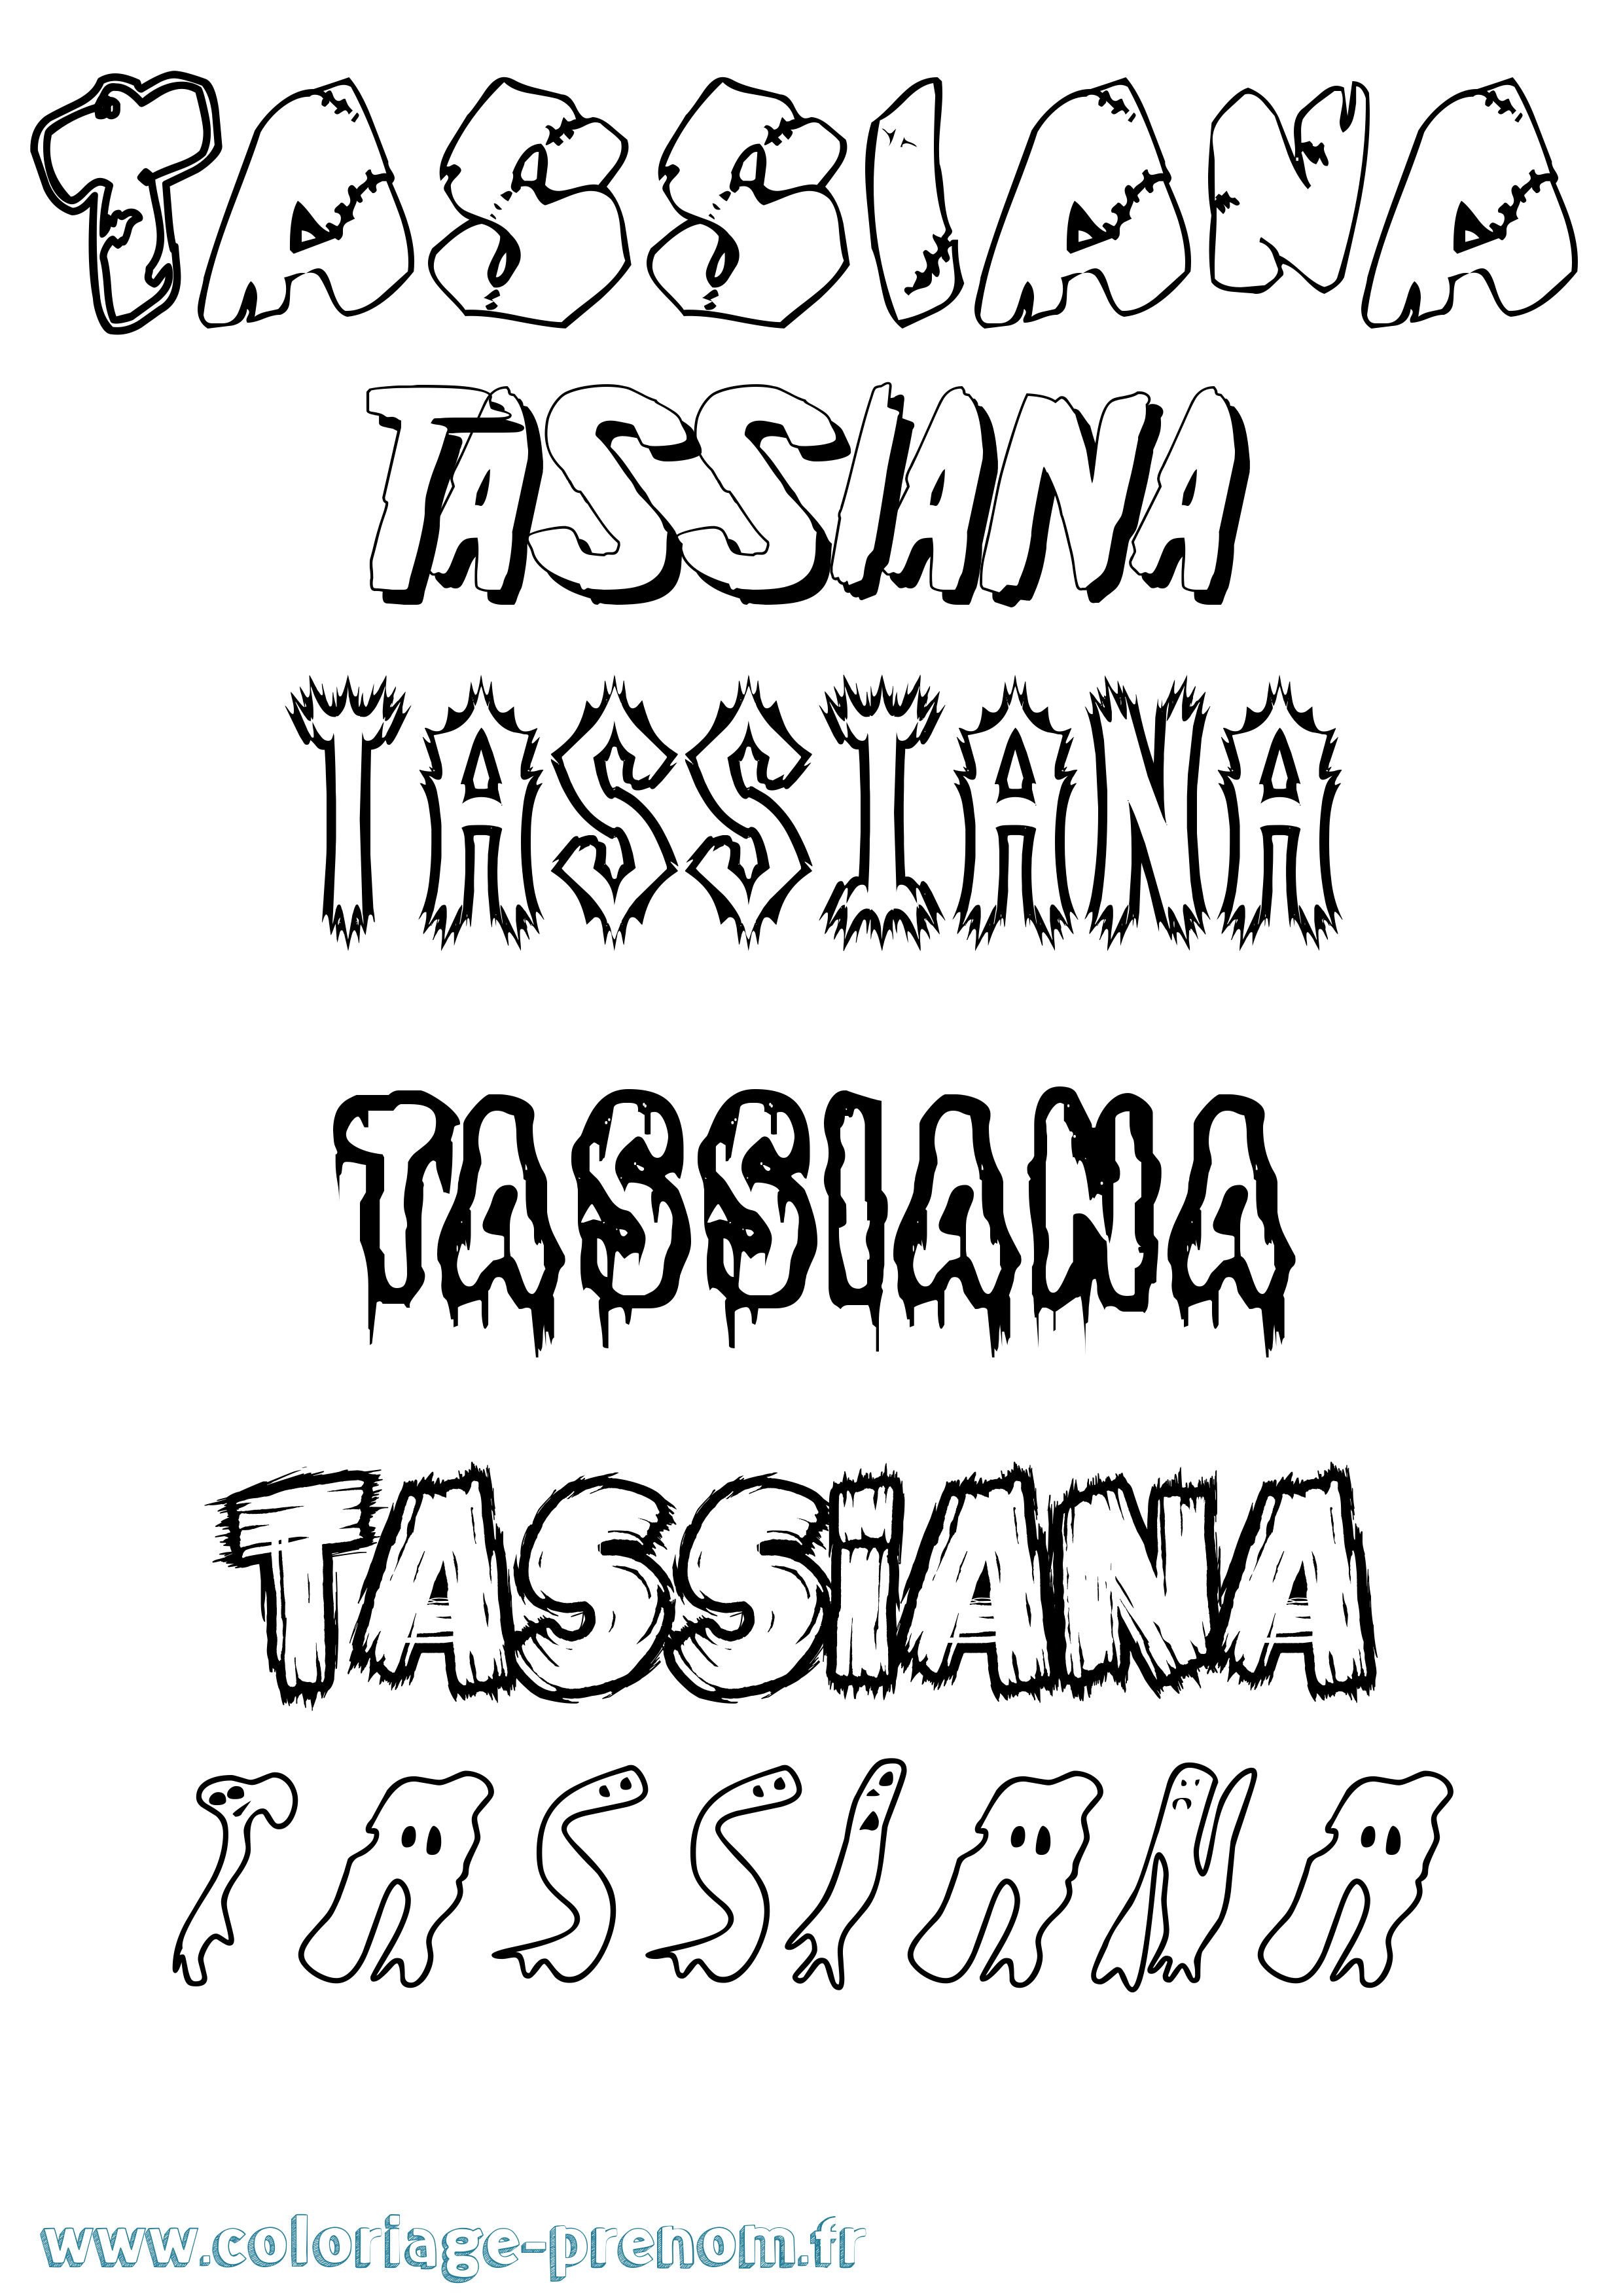 Coloriage prénom Tassiana Frisson